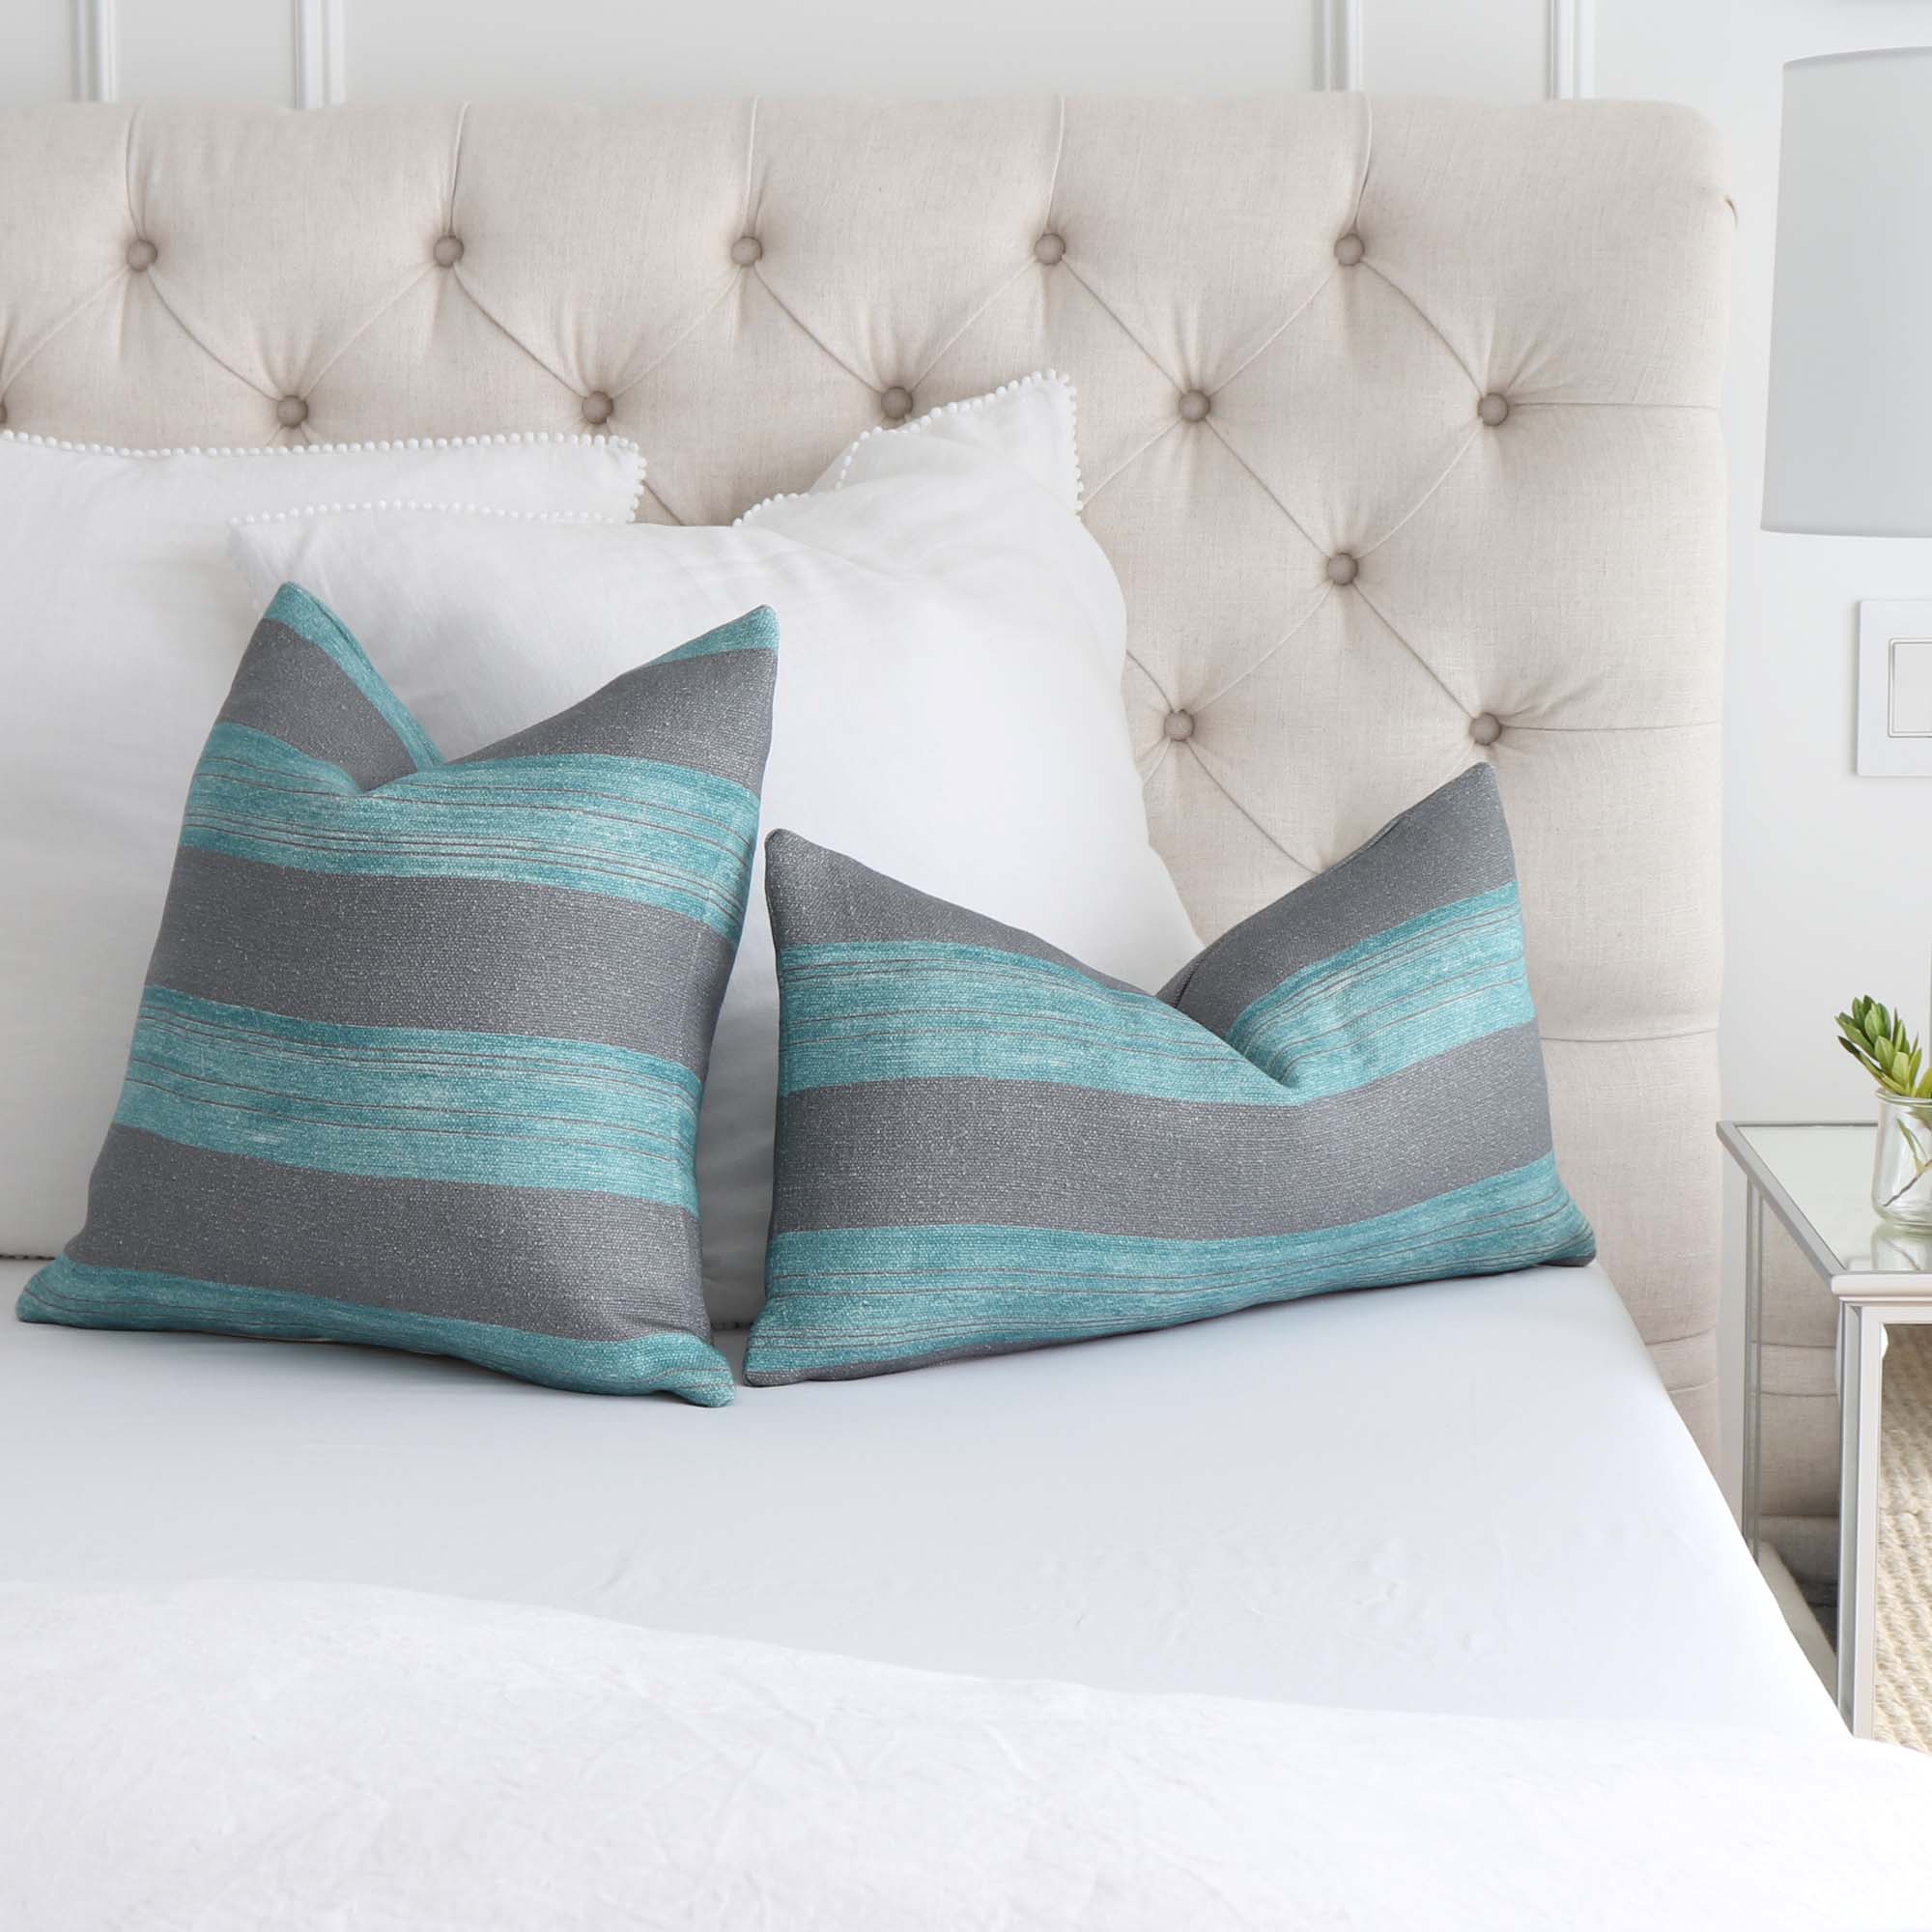 Kelly Wearstler Askew Slate Jade Stripes Linen Designer Luxury Throw Pillow Cover on King Bed